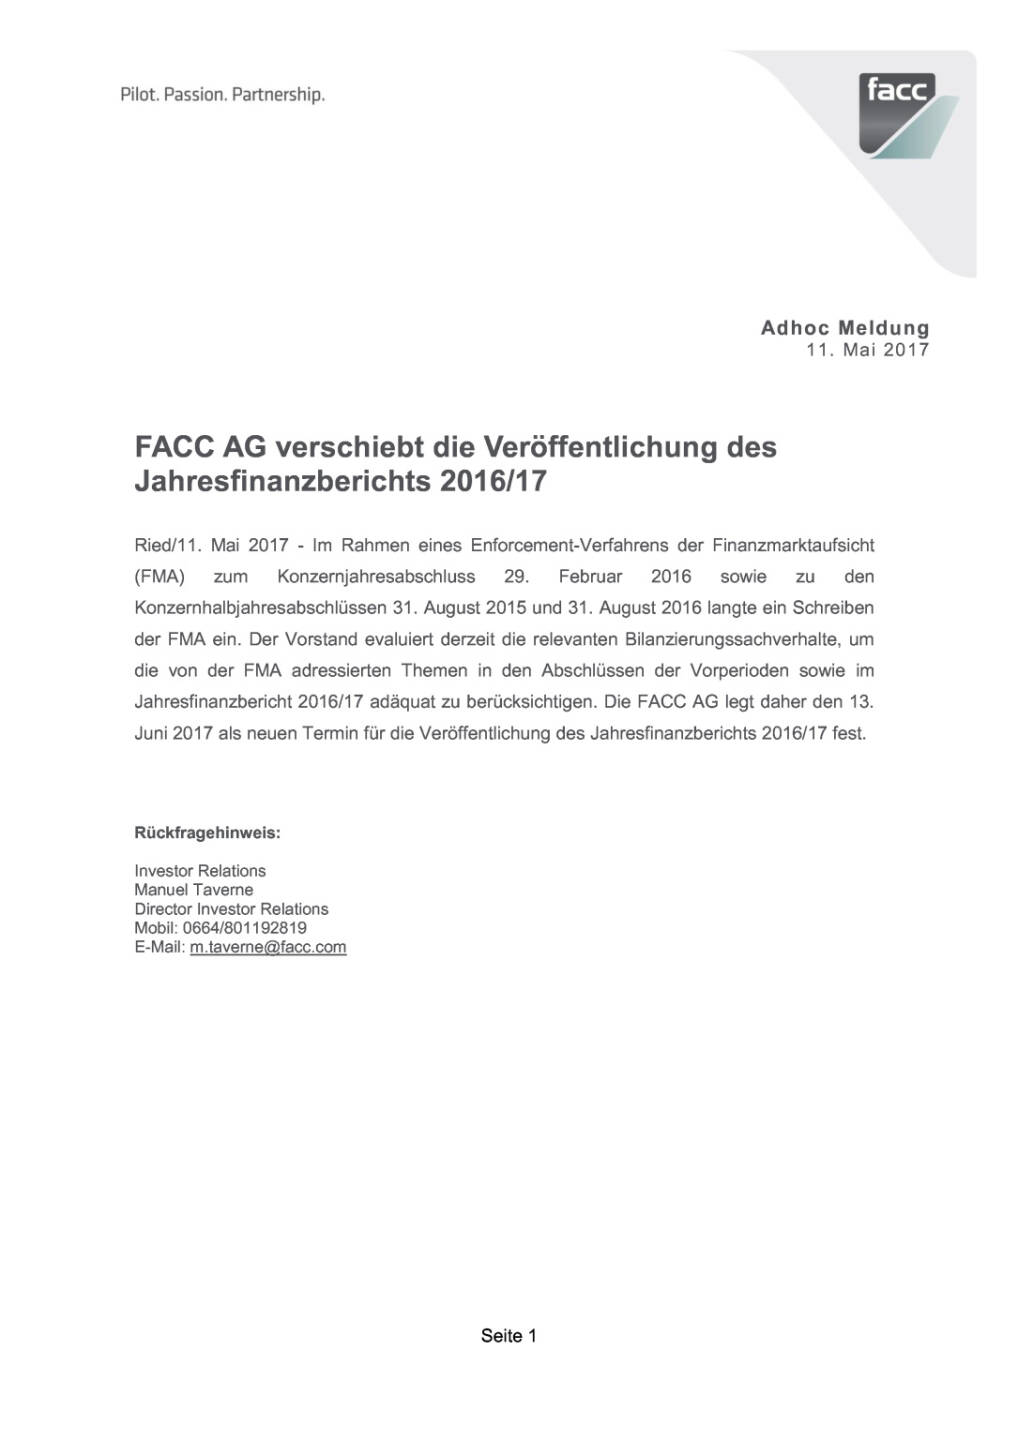 FACC AG verschiebt die Veröffentlichung des Jahresfinanzberichts 2016/17, Seite 1/1, komplettes Dokument unter http://boerse-social.com/static/uploads/file_2247_facc_ag_verschiebt_die_veröffentlichung_des_jahresfinanzberichts_201617.pdf